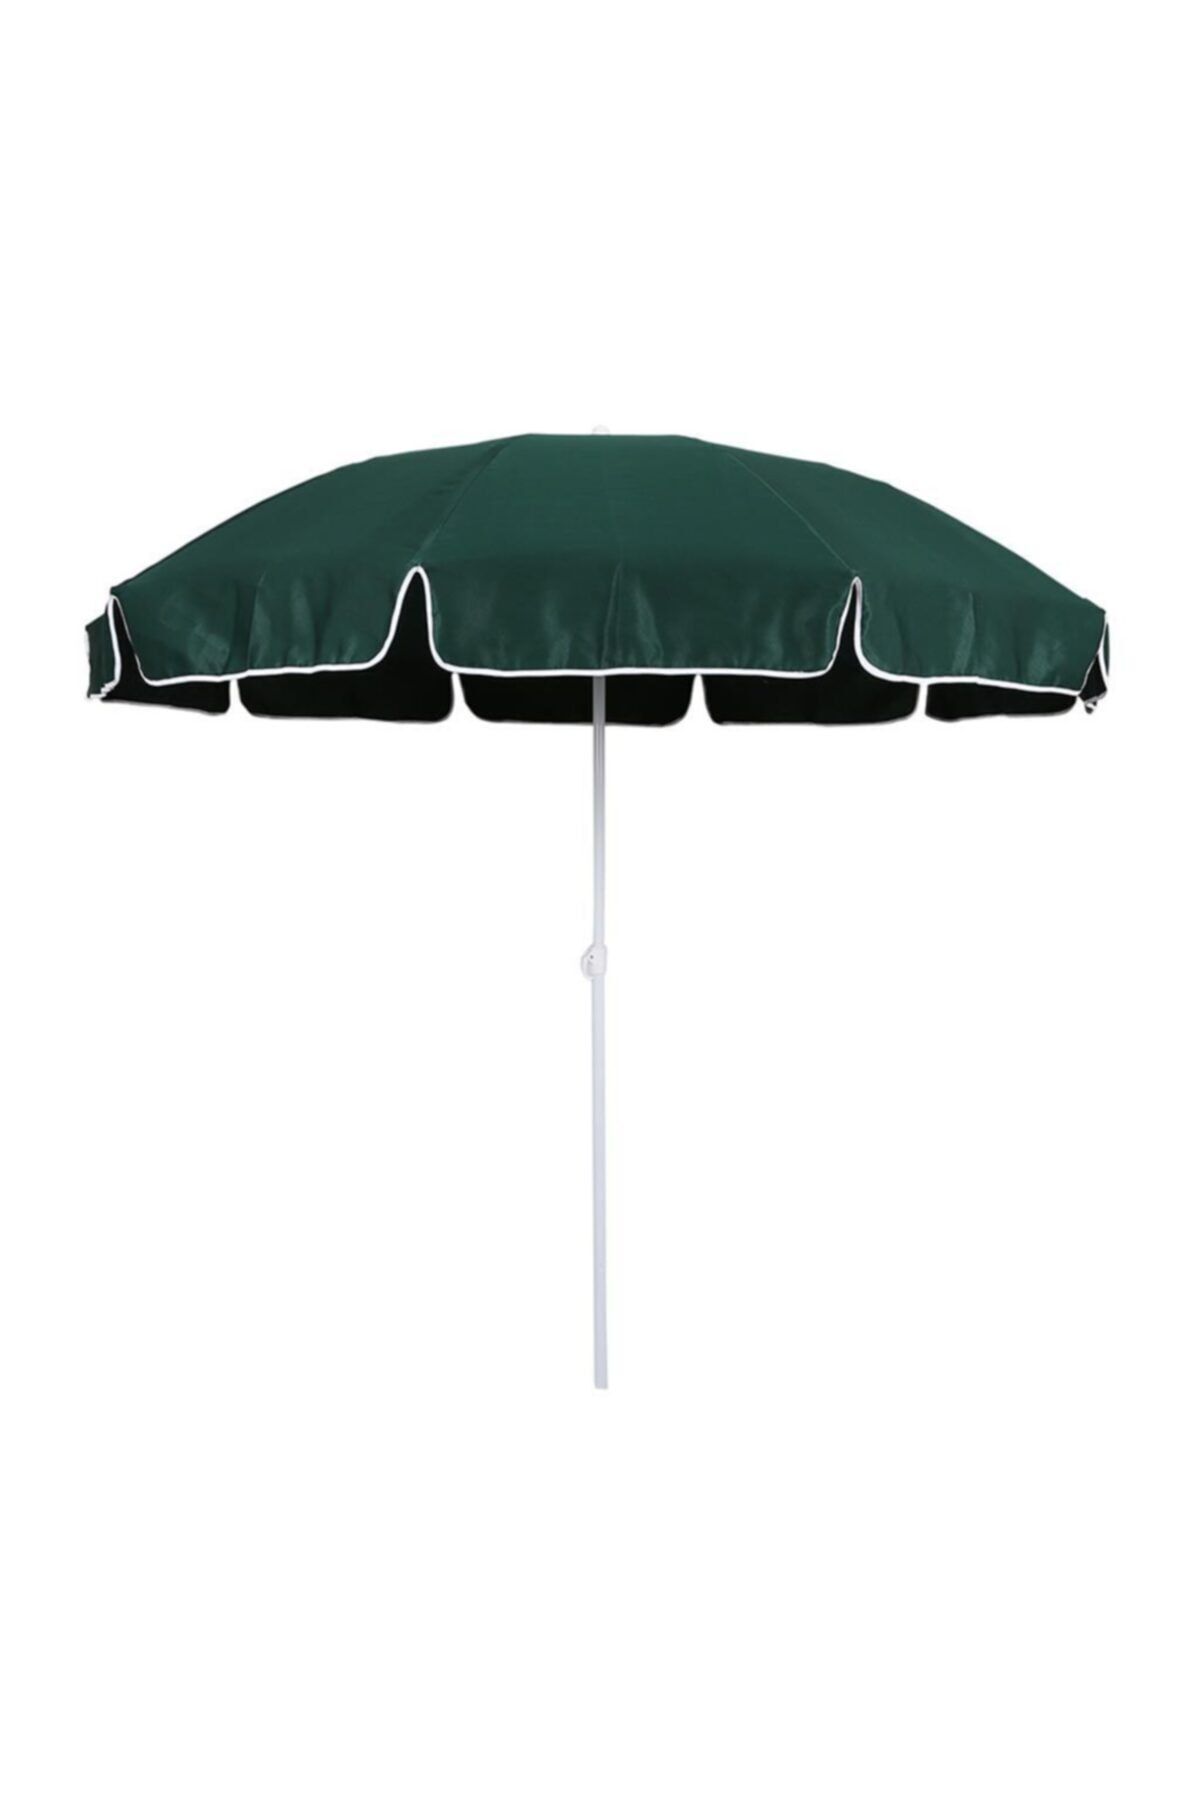 Mashotrend Tek Renk Polyester Kumaş Plaj Şemsiyesi - Balkon Şemsiyesi - Bahçe Şemsiyesi